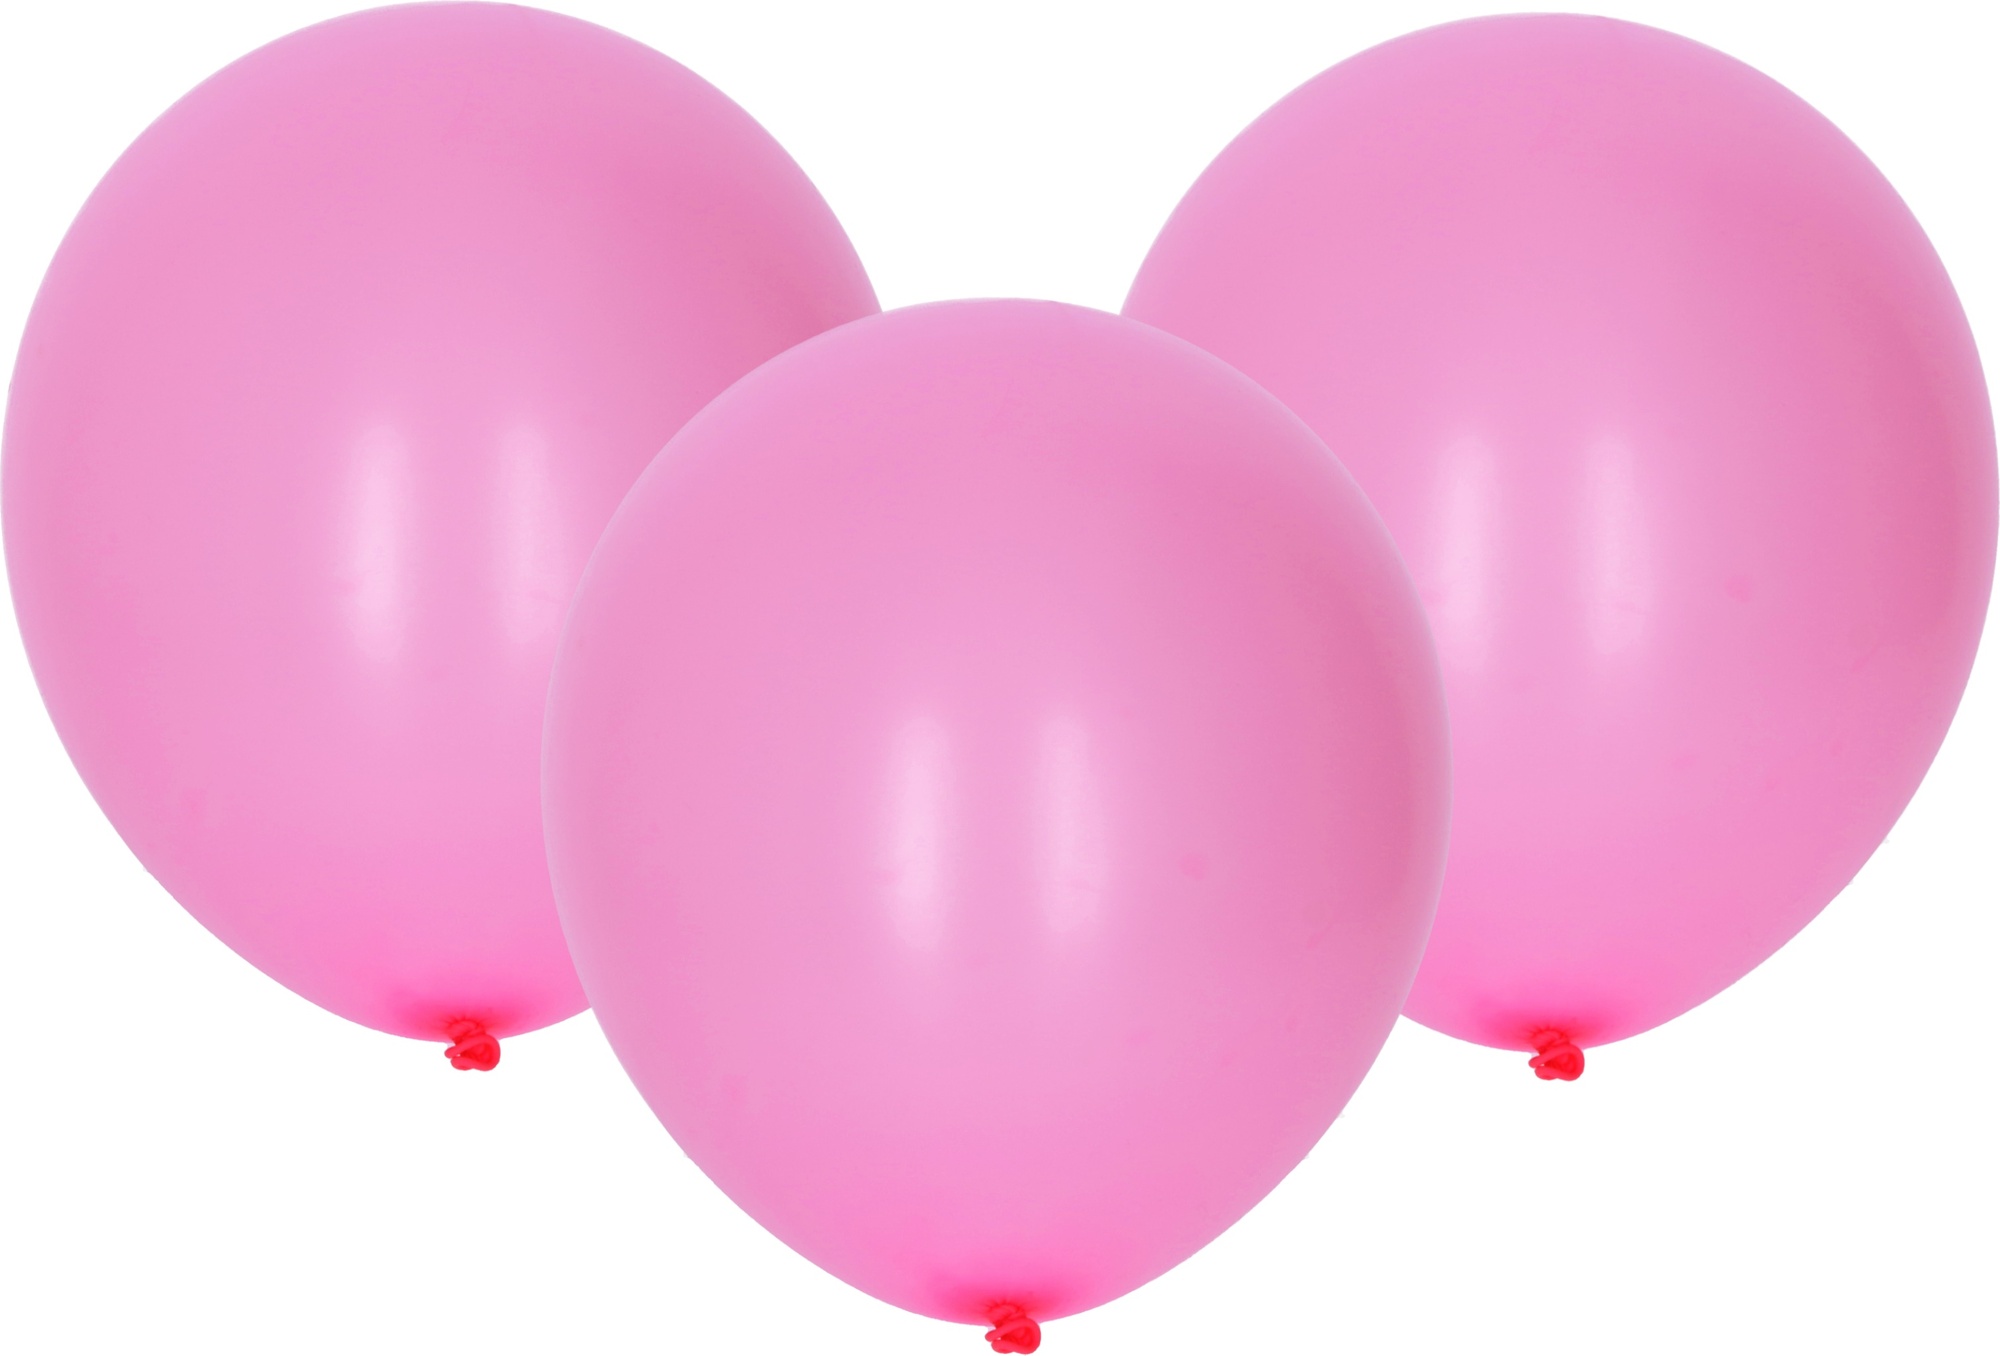 Balónek nafukovací 30cm - sada 10ks, růžový